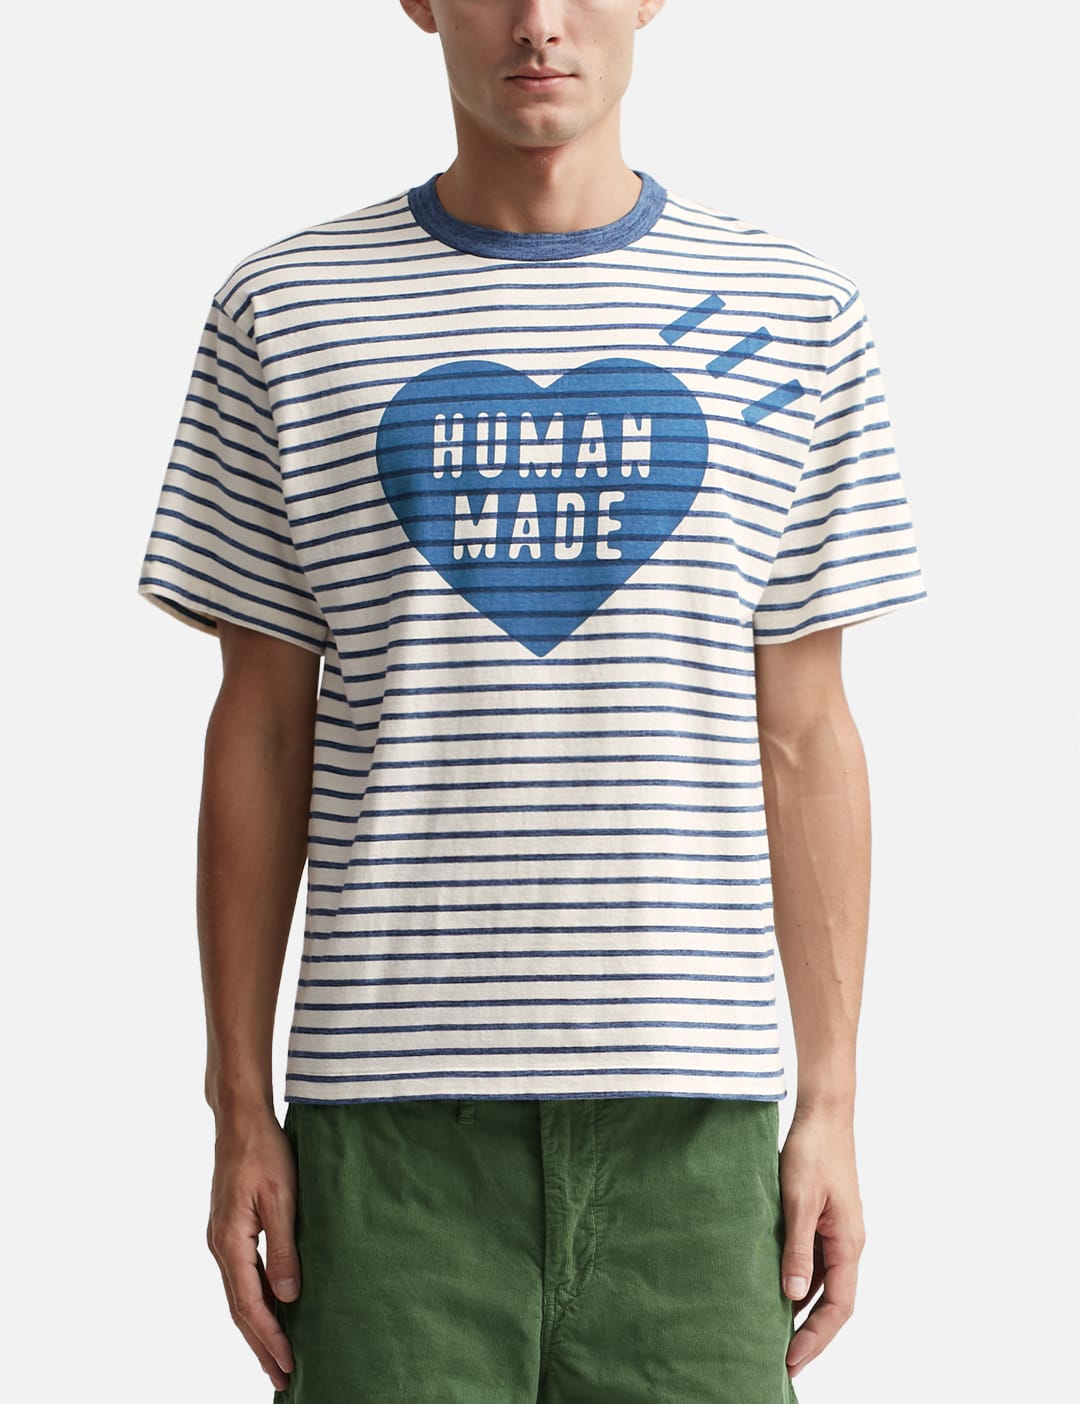 human made HEART T-SHIRT tシャツ